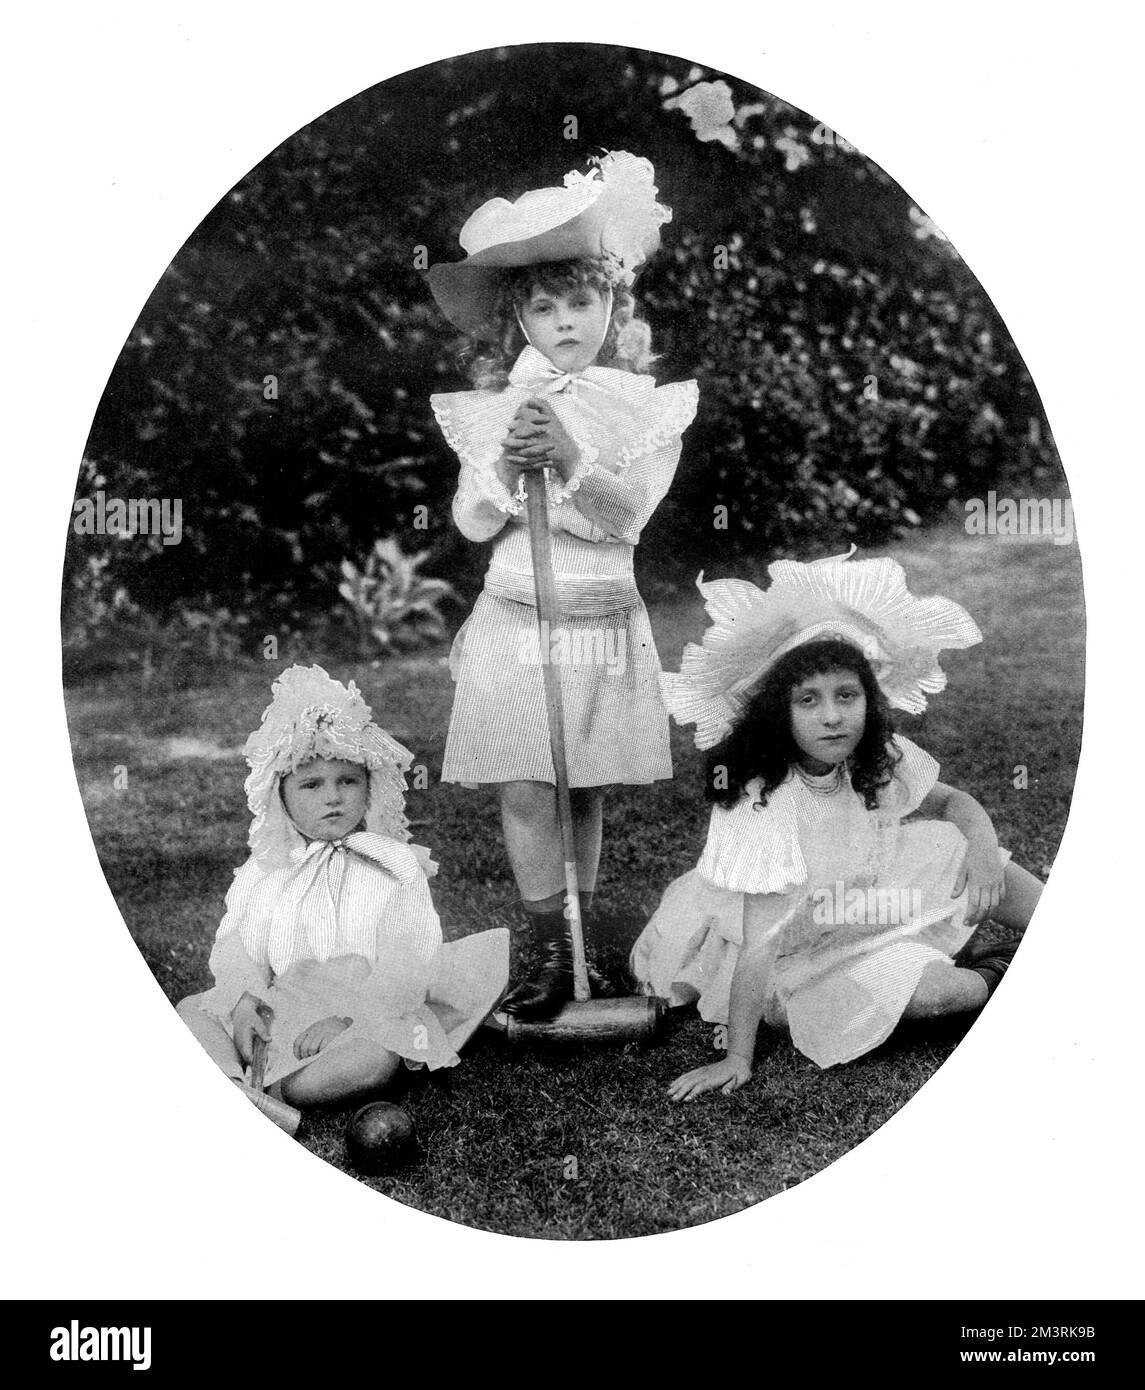 Comtesse Anastasia Mikhaïlovna de Torby, CBE (1892 - 1977), autrement nommée Lady Zia Wernher, fille aînée du Grand-duc Michael Mikhaïlovitch de Russie (debout), photographiée avec sa sœur Nadejda (Nada) Mikhaïlovna Mountbatten, Marchionne de Milford Haven (1896 - 1963) à gauche. Sur la droite se trouve Zoia de Stockl, fille du Baron de Stockl (Stoeckl), ambassadeur de Russie aux États-Unis, mais auparavant echéry au Grand-Duc Michael. Zoia était une femme d'honneur de la dernière impératrice russe, Alexandra Feodorovna, épouse de Tsar Nicholas II 1899 Banque D'Images